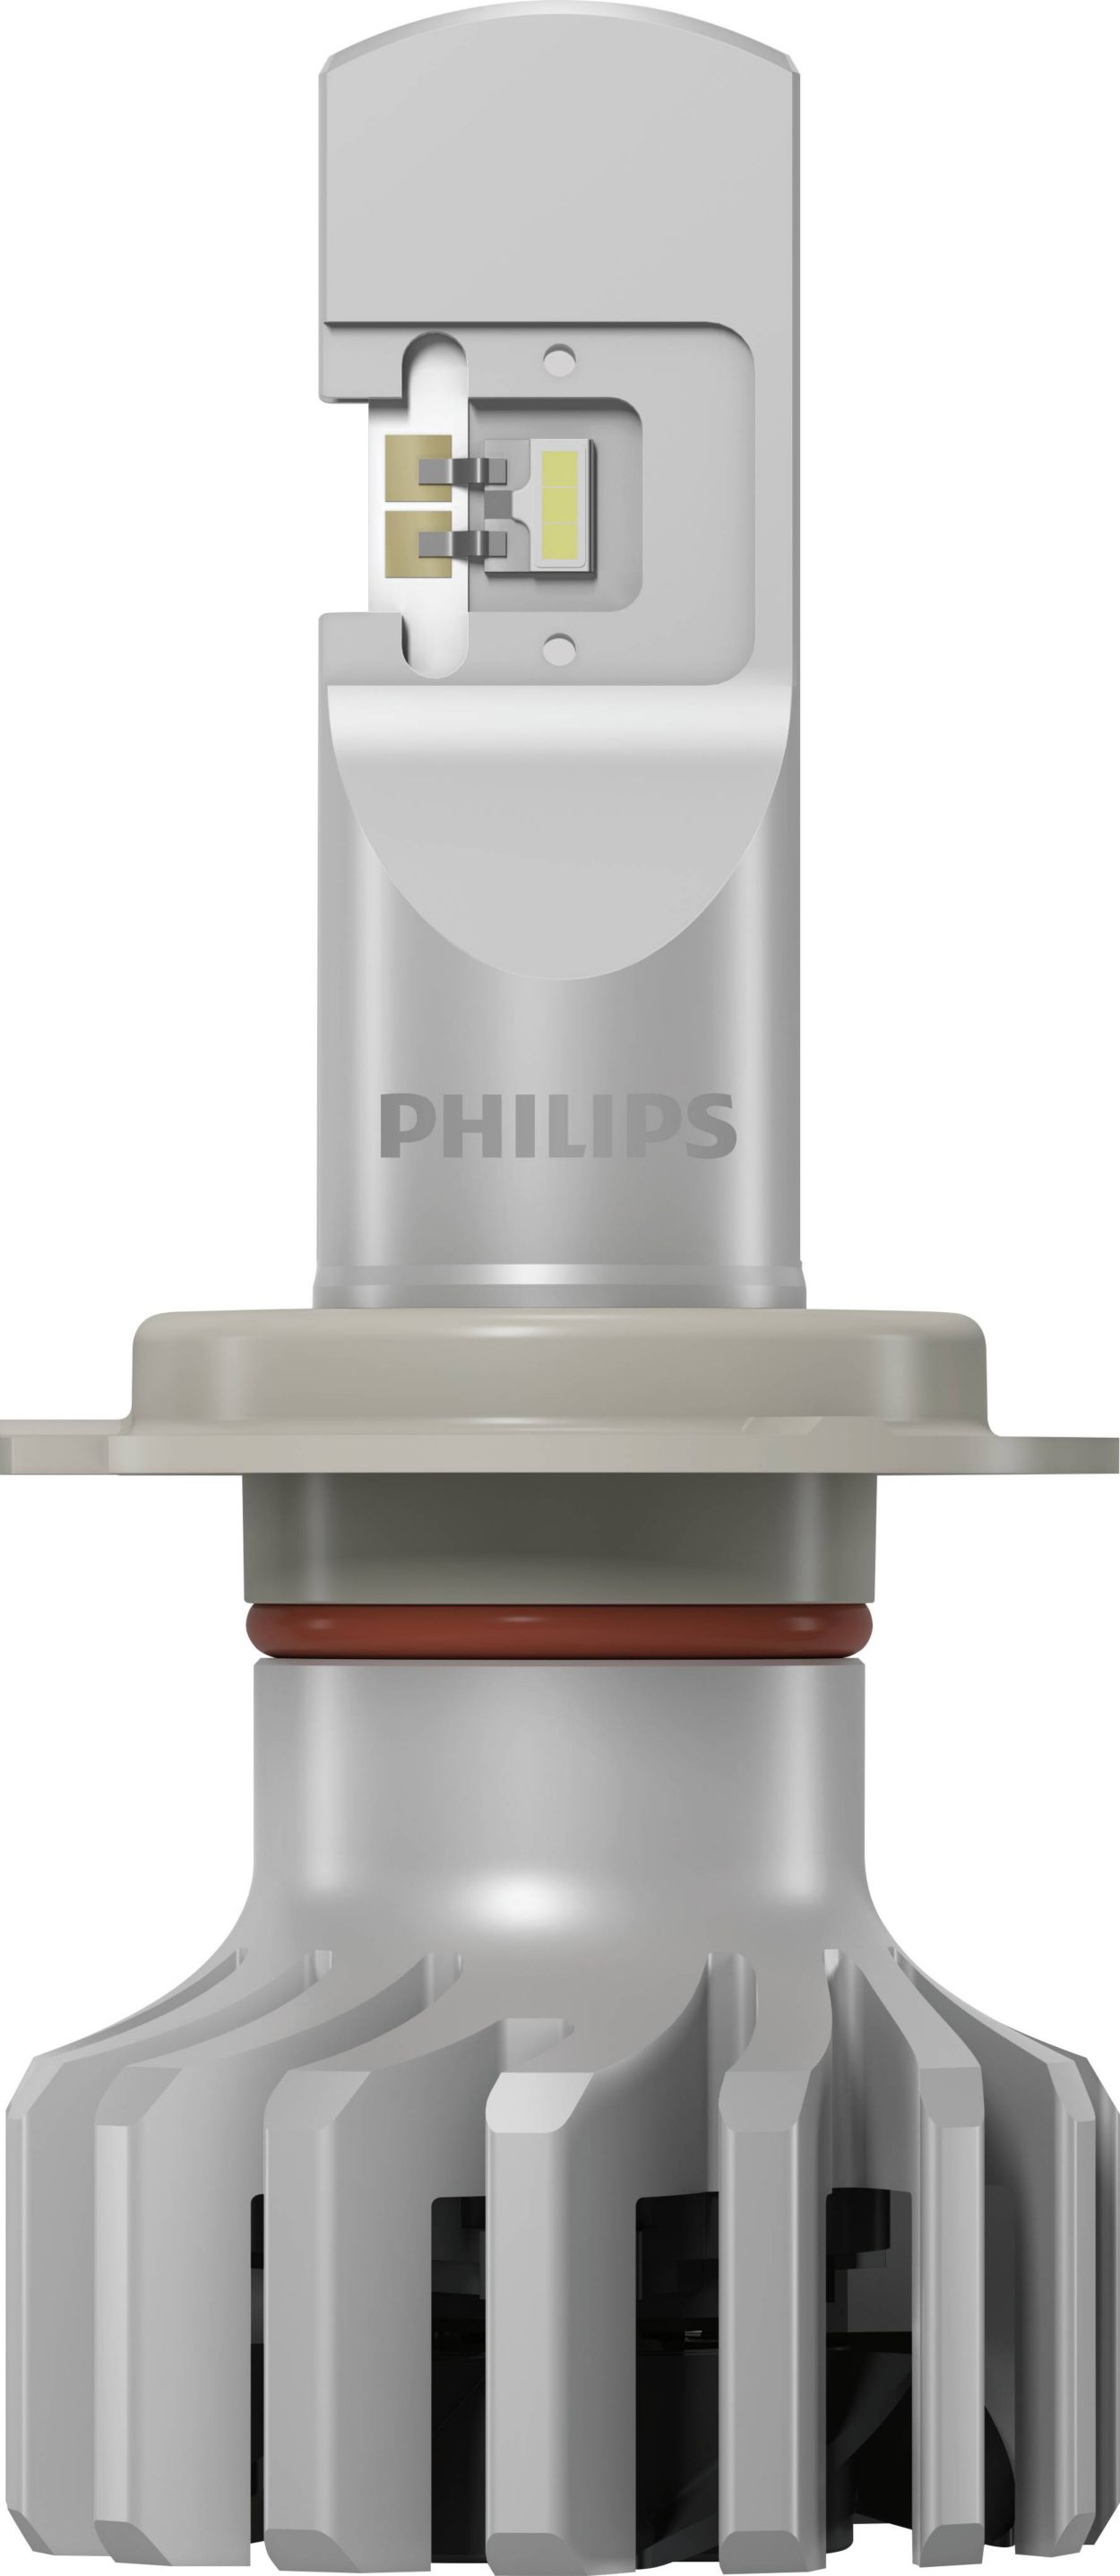 2 ampoules h7 led Philips homologué PRO6001HL neuf - Équipement auto